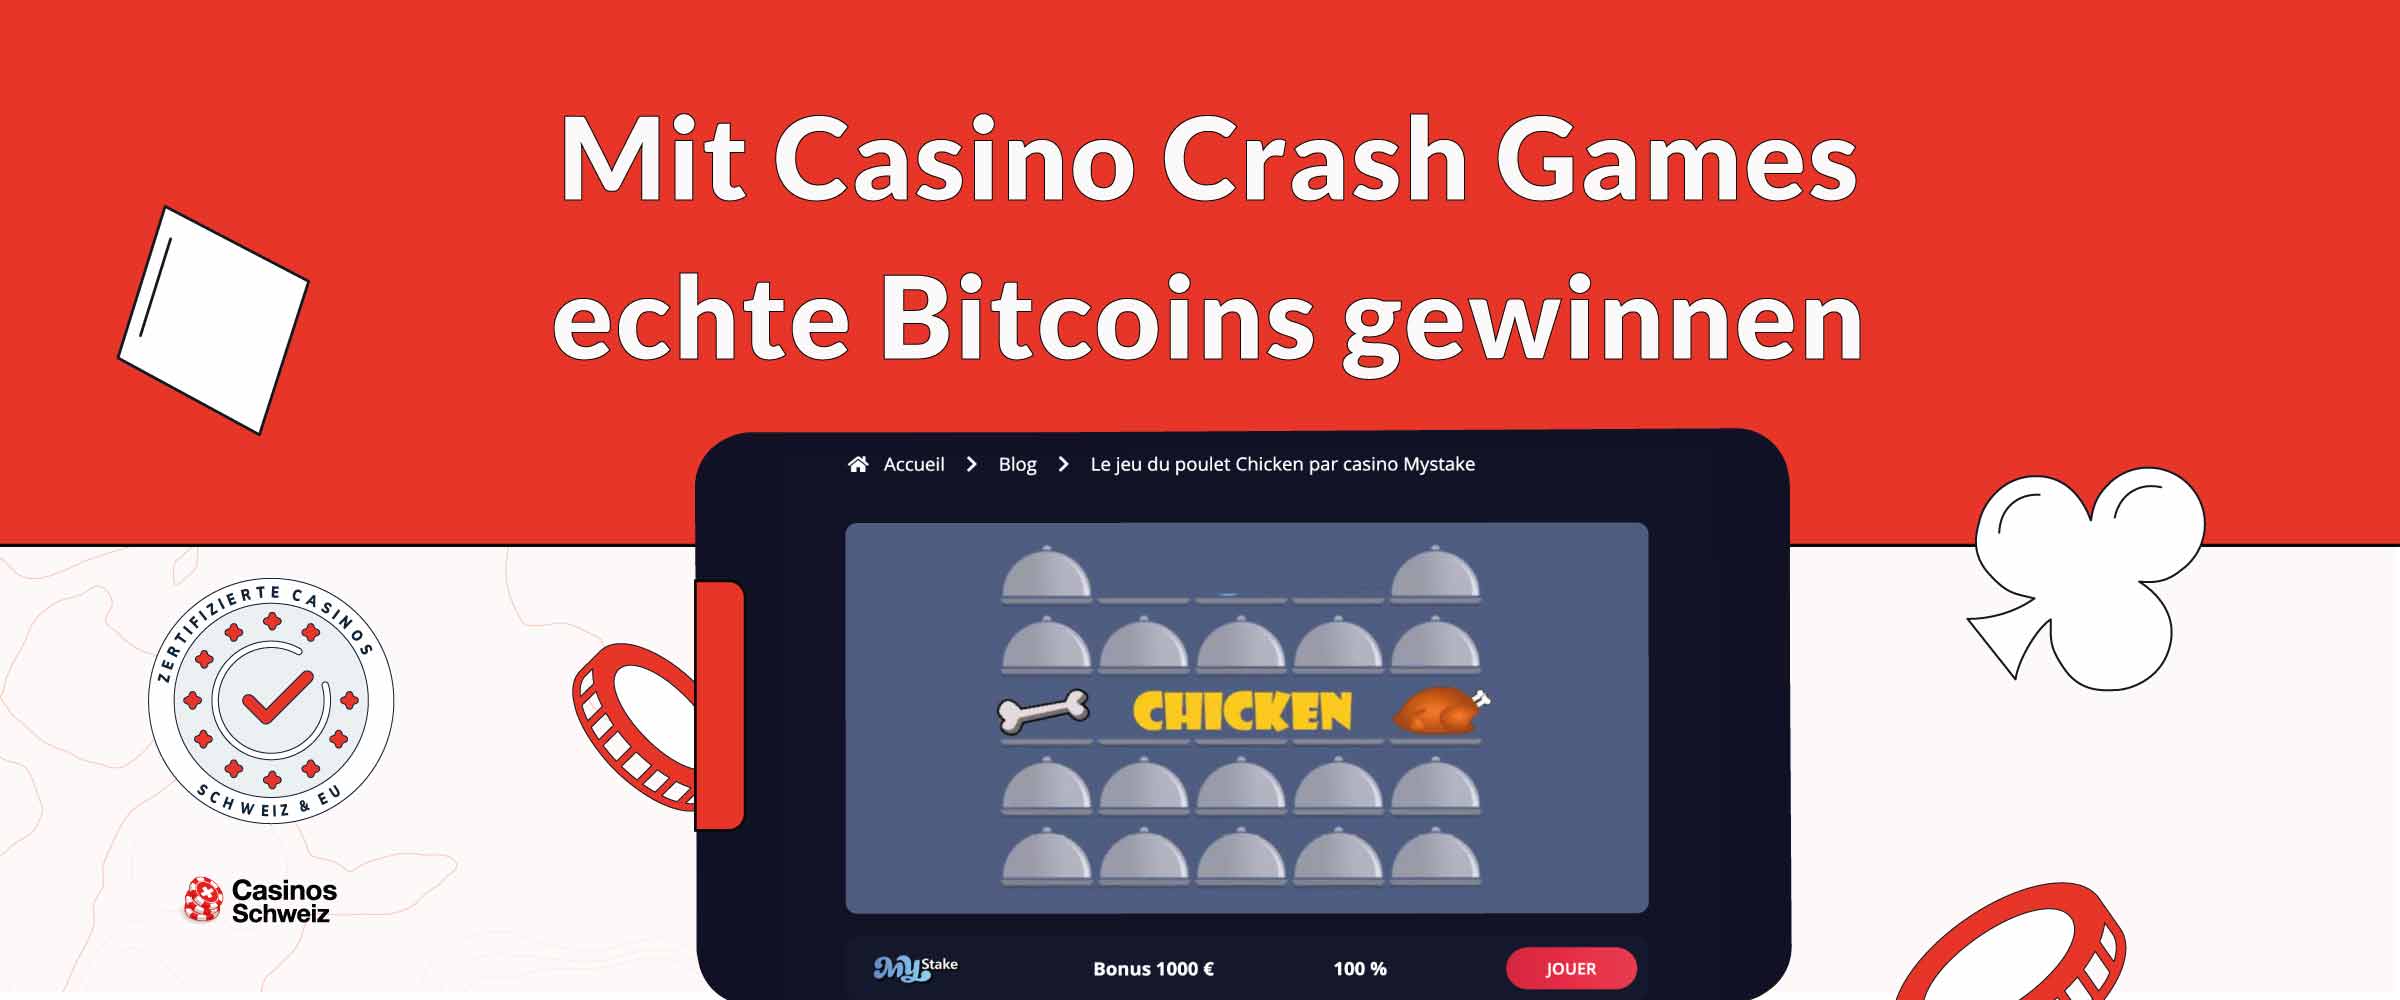 Mit Casino Crash Games echte Bitcoins gewinnen